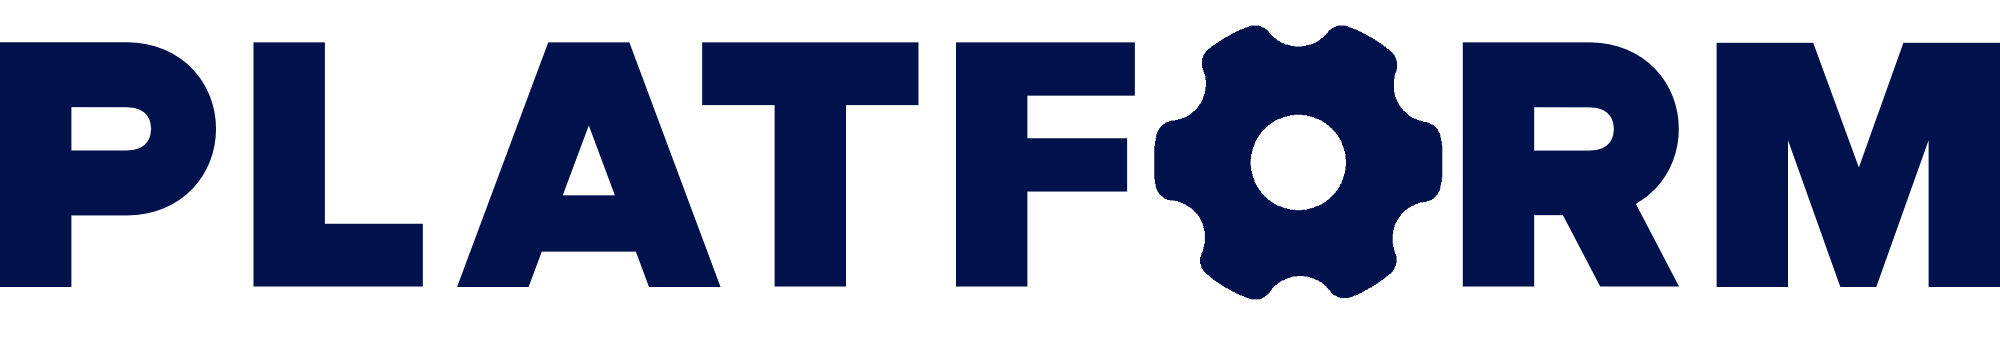 Platform Botika Logo